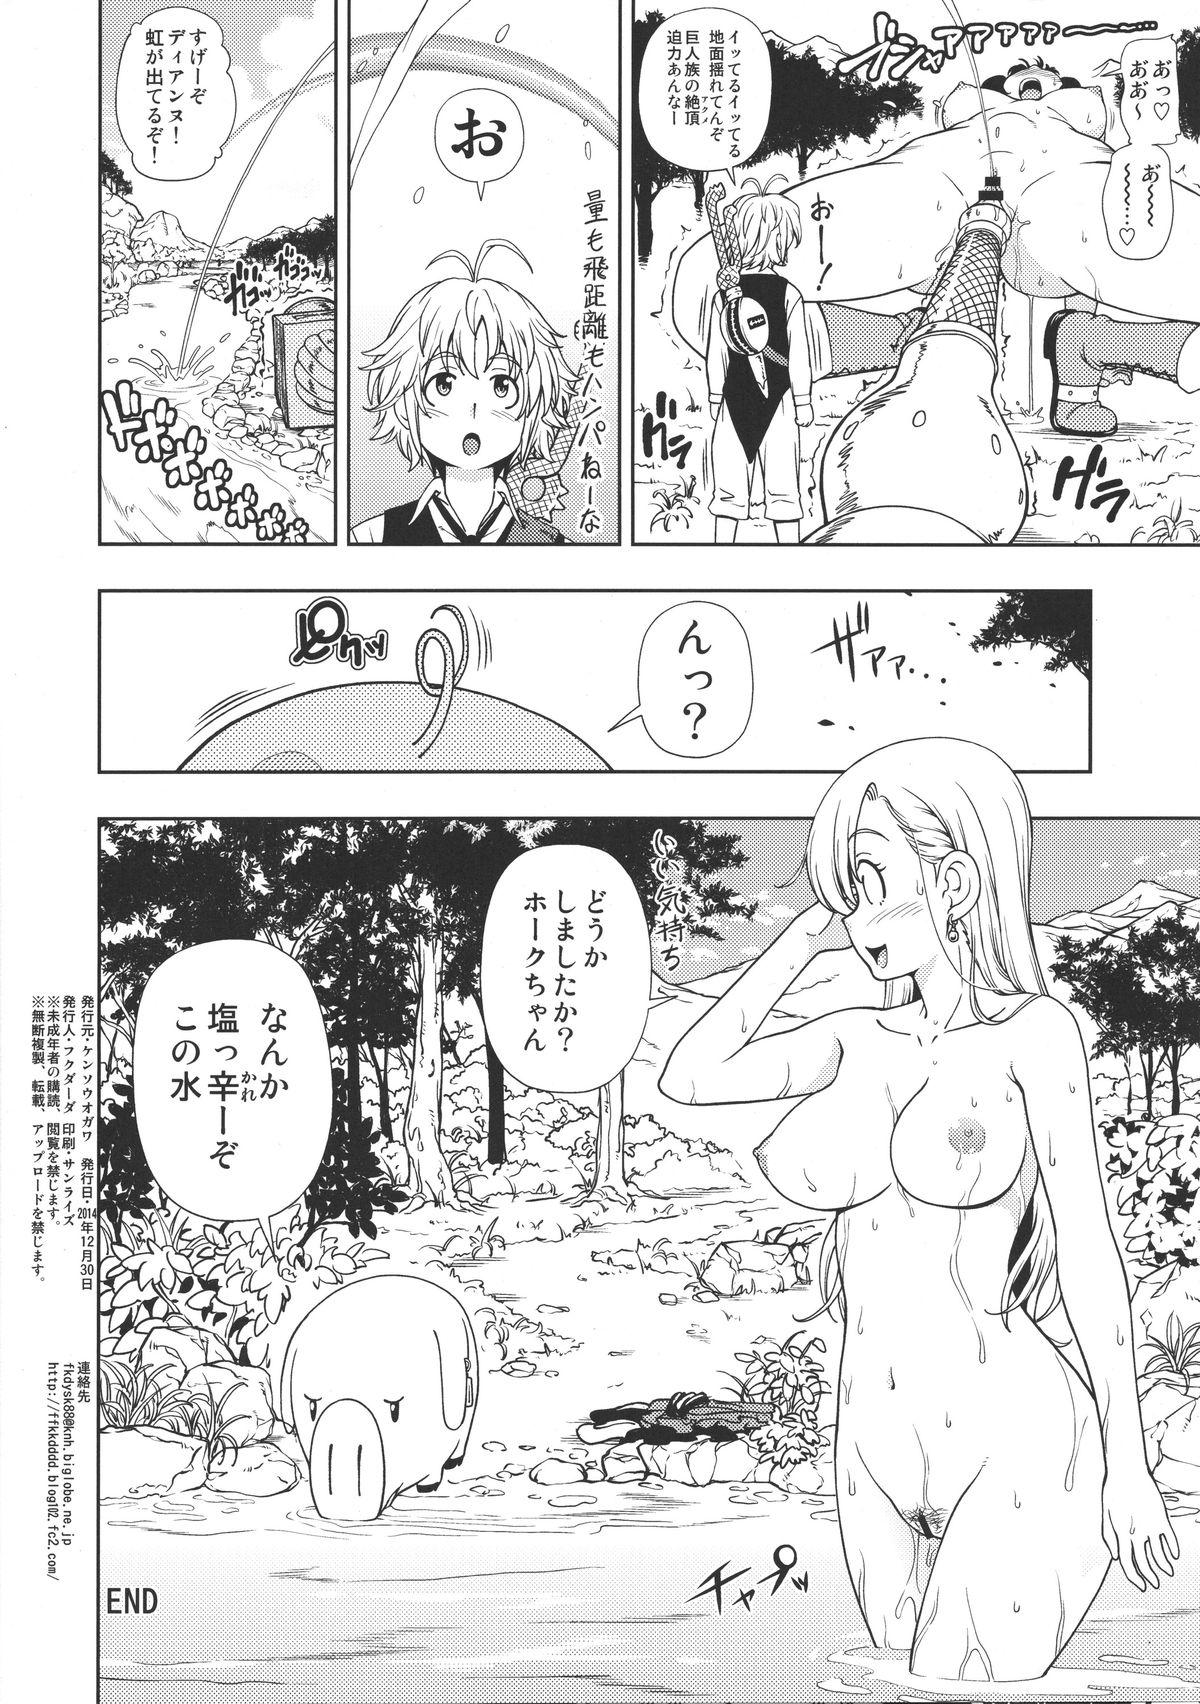 Hardcore Sex Serpent no Keihanzai - Nanatsu no taizai Stepsiblings - Page 4